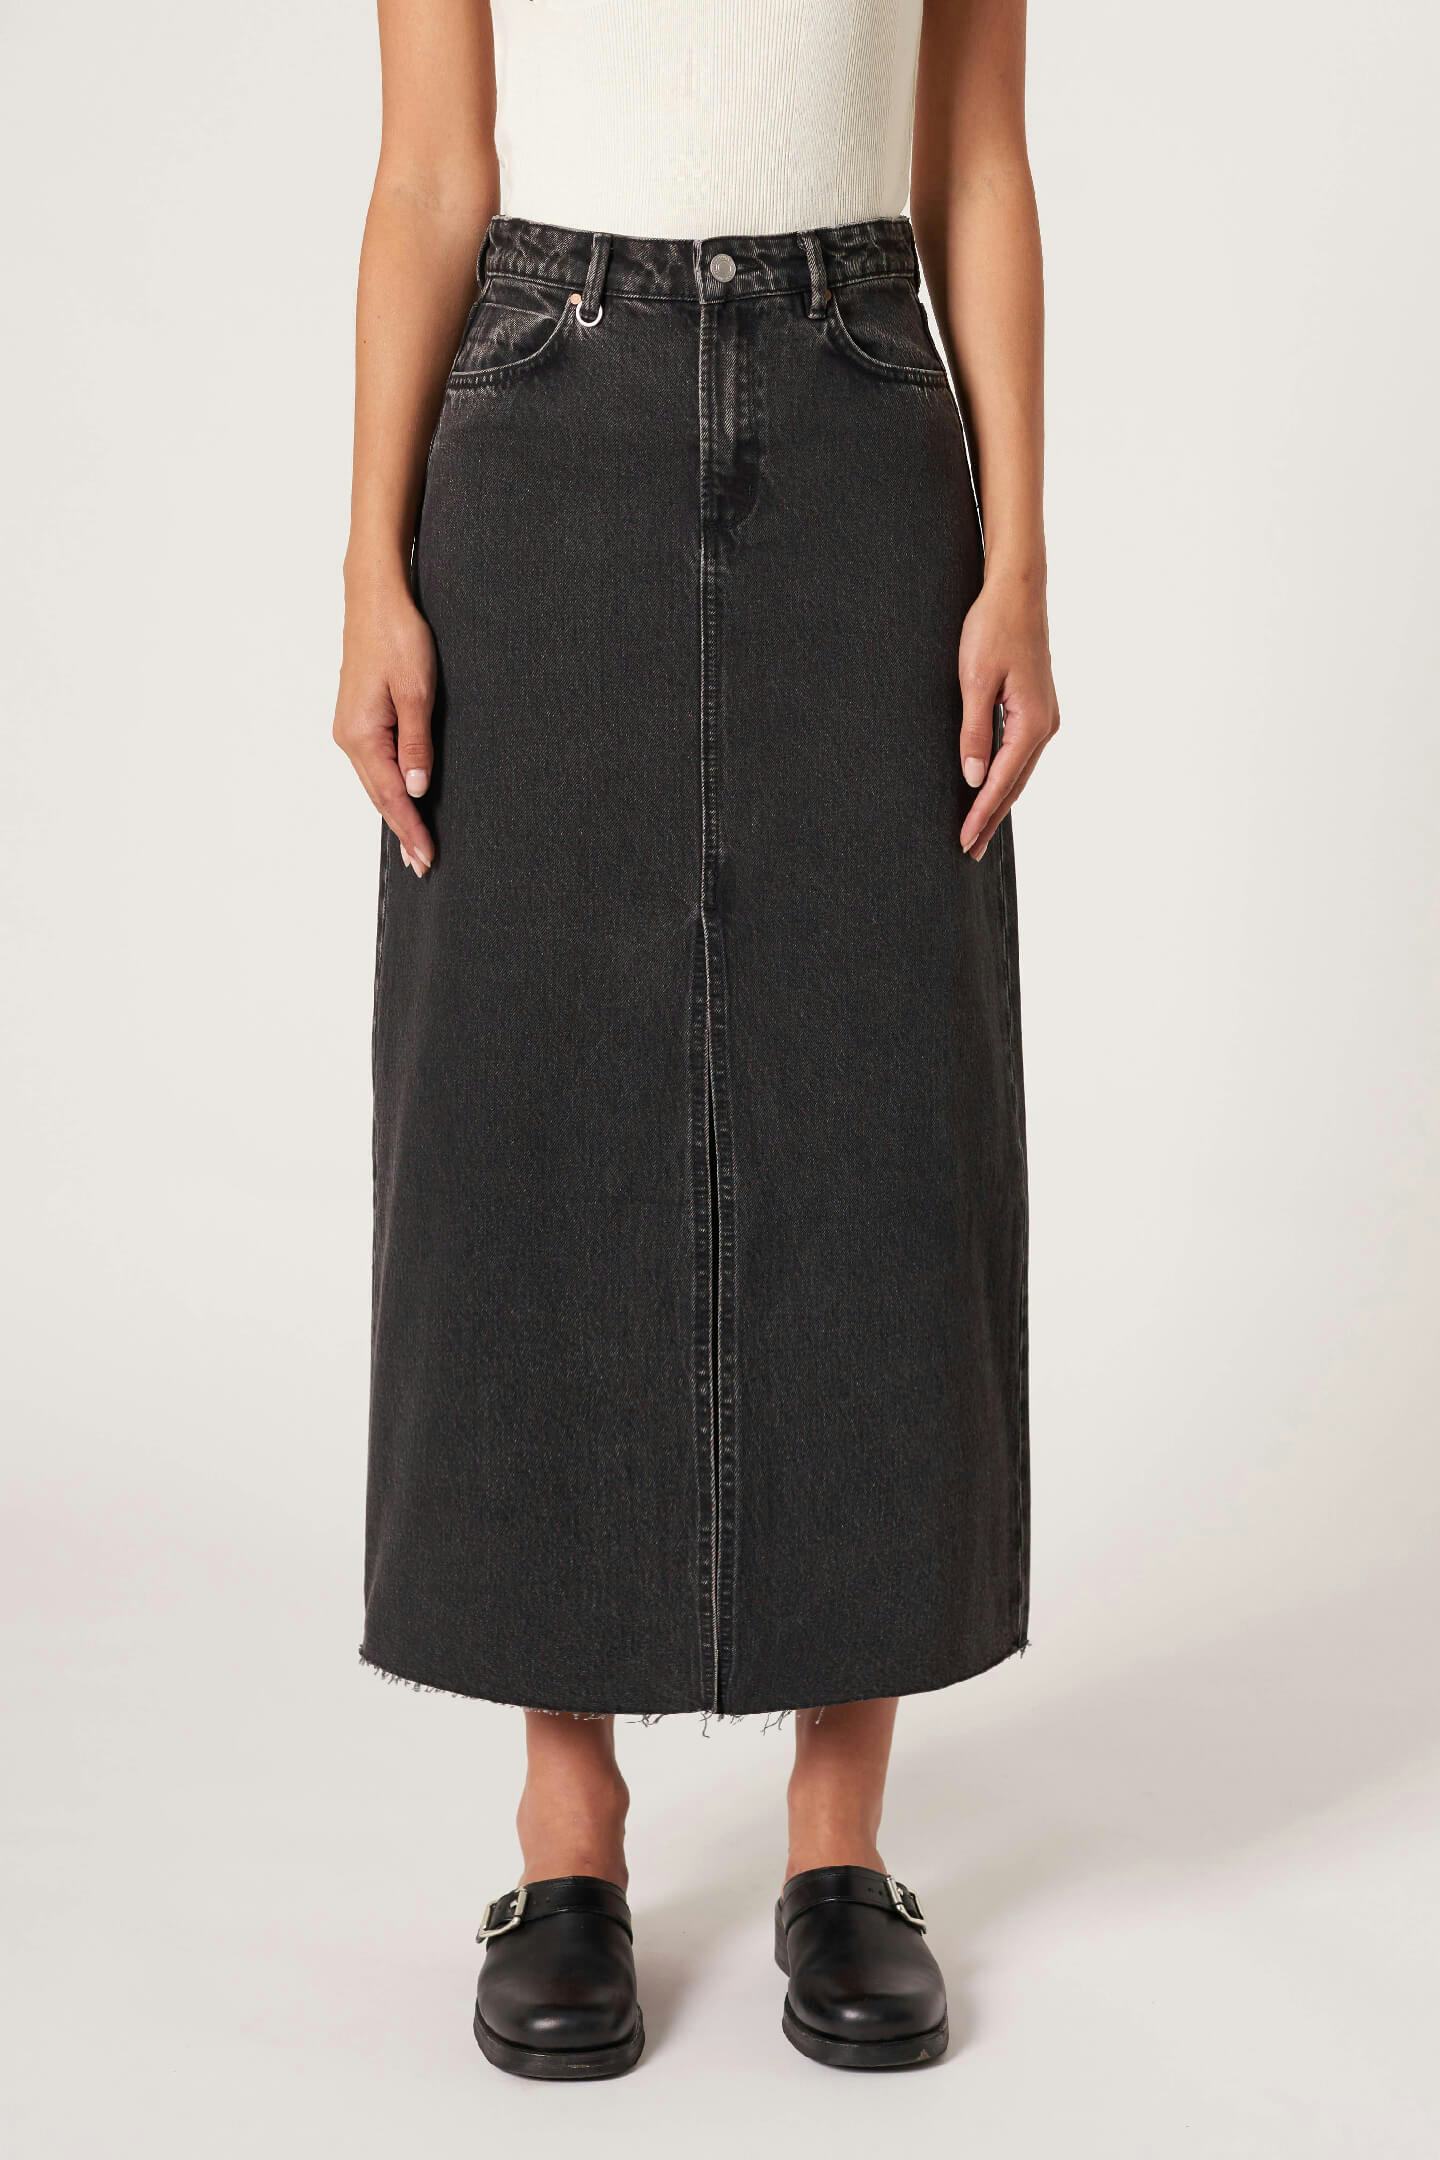 Darcy Maxi Skirt - Granite Neuw maxi black womens-skirts 